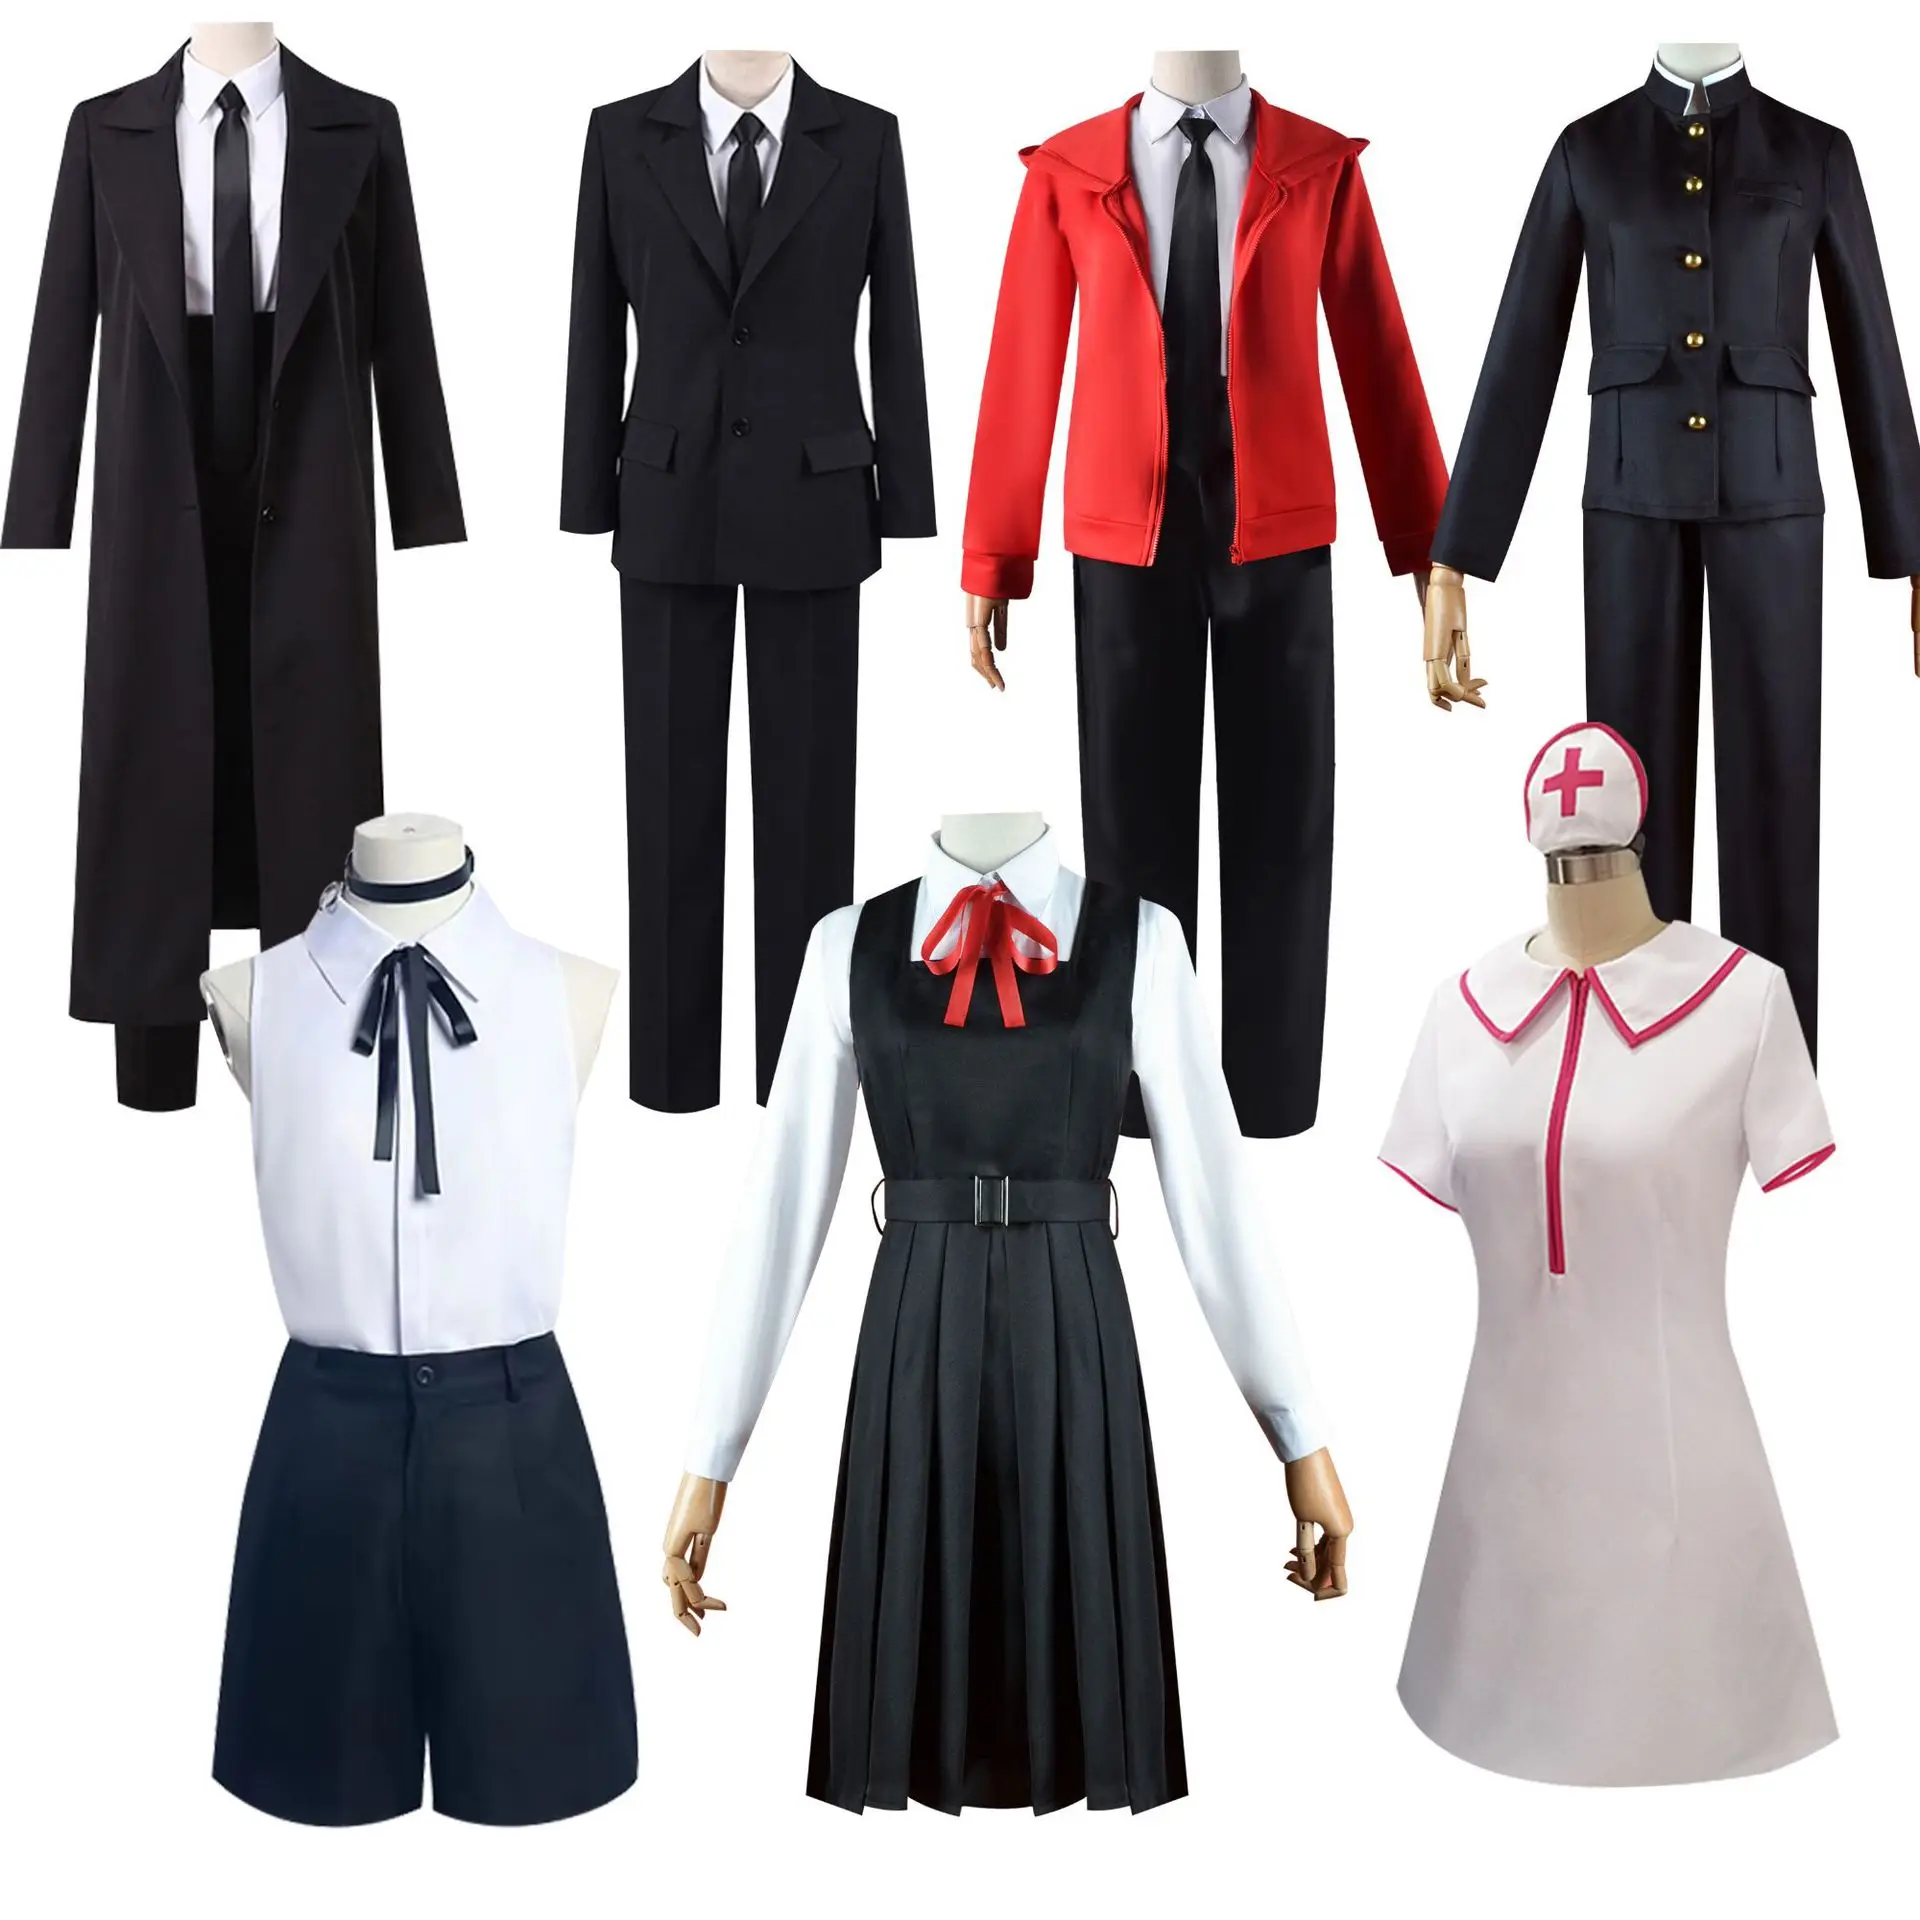 

Аниме бензопила макима Reze пава косплей костюмы Хэллоуин костюмы для женщин платье костюм сексуальная униформа одежда